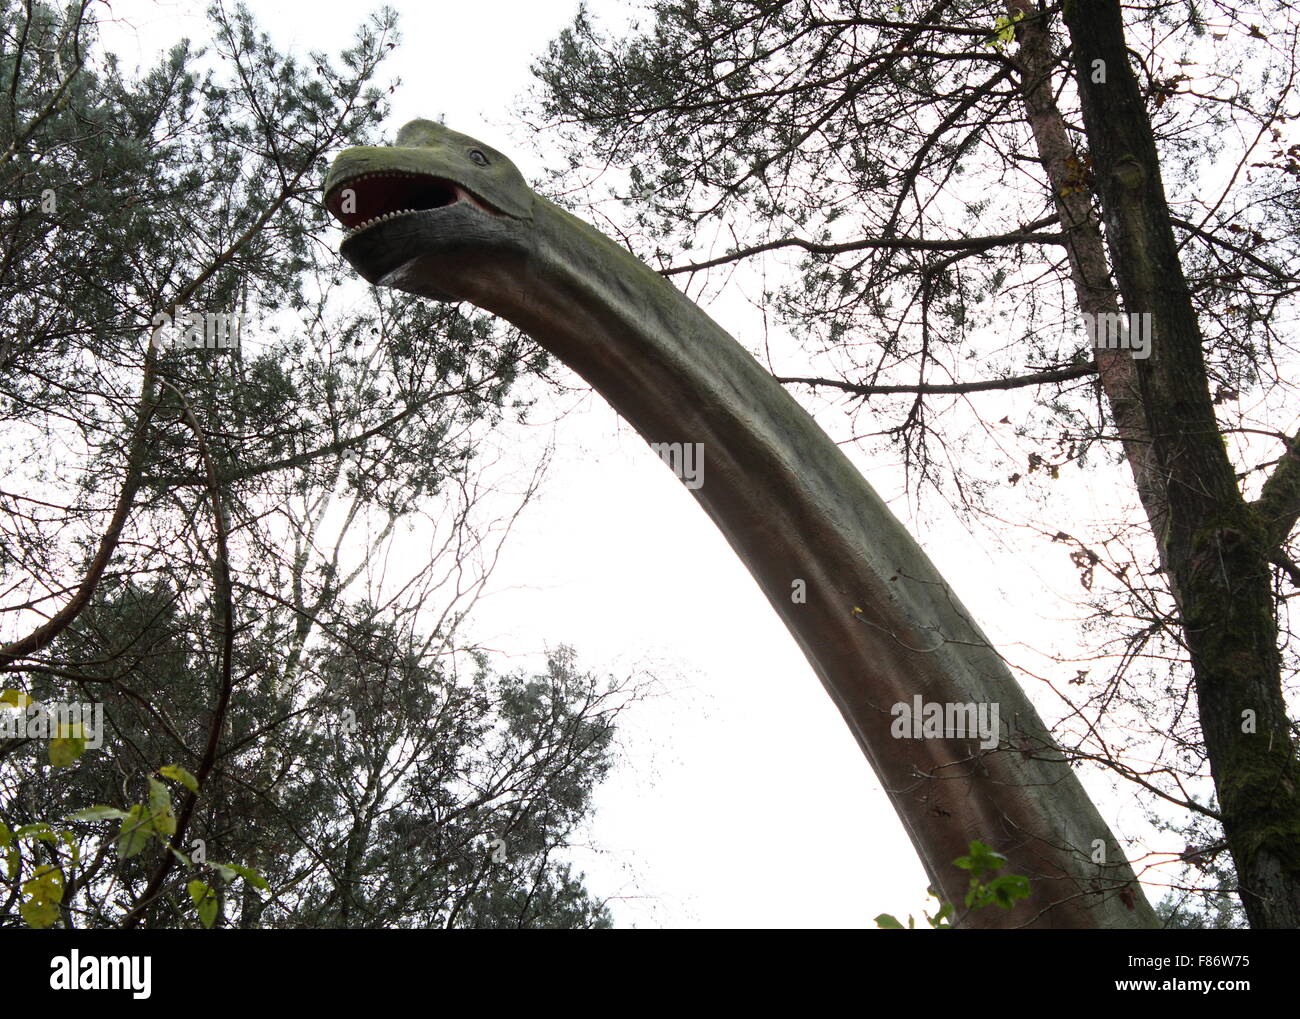 Modelo de un Braquiosaurio gigante imponente, de tamaño completo y realista Dinopark dino estatua en Zoo de Amersfoort, Holanda, época jurásica Foto de stock